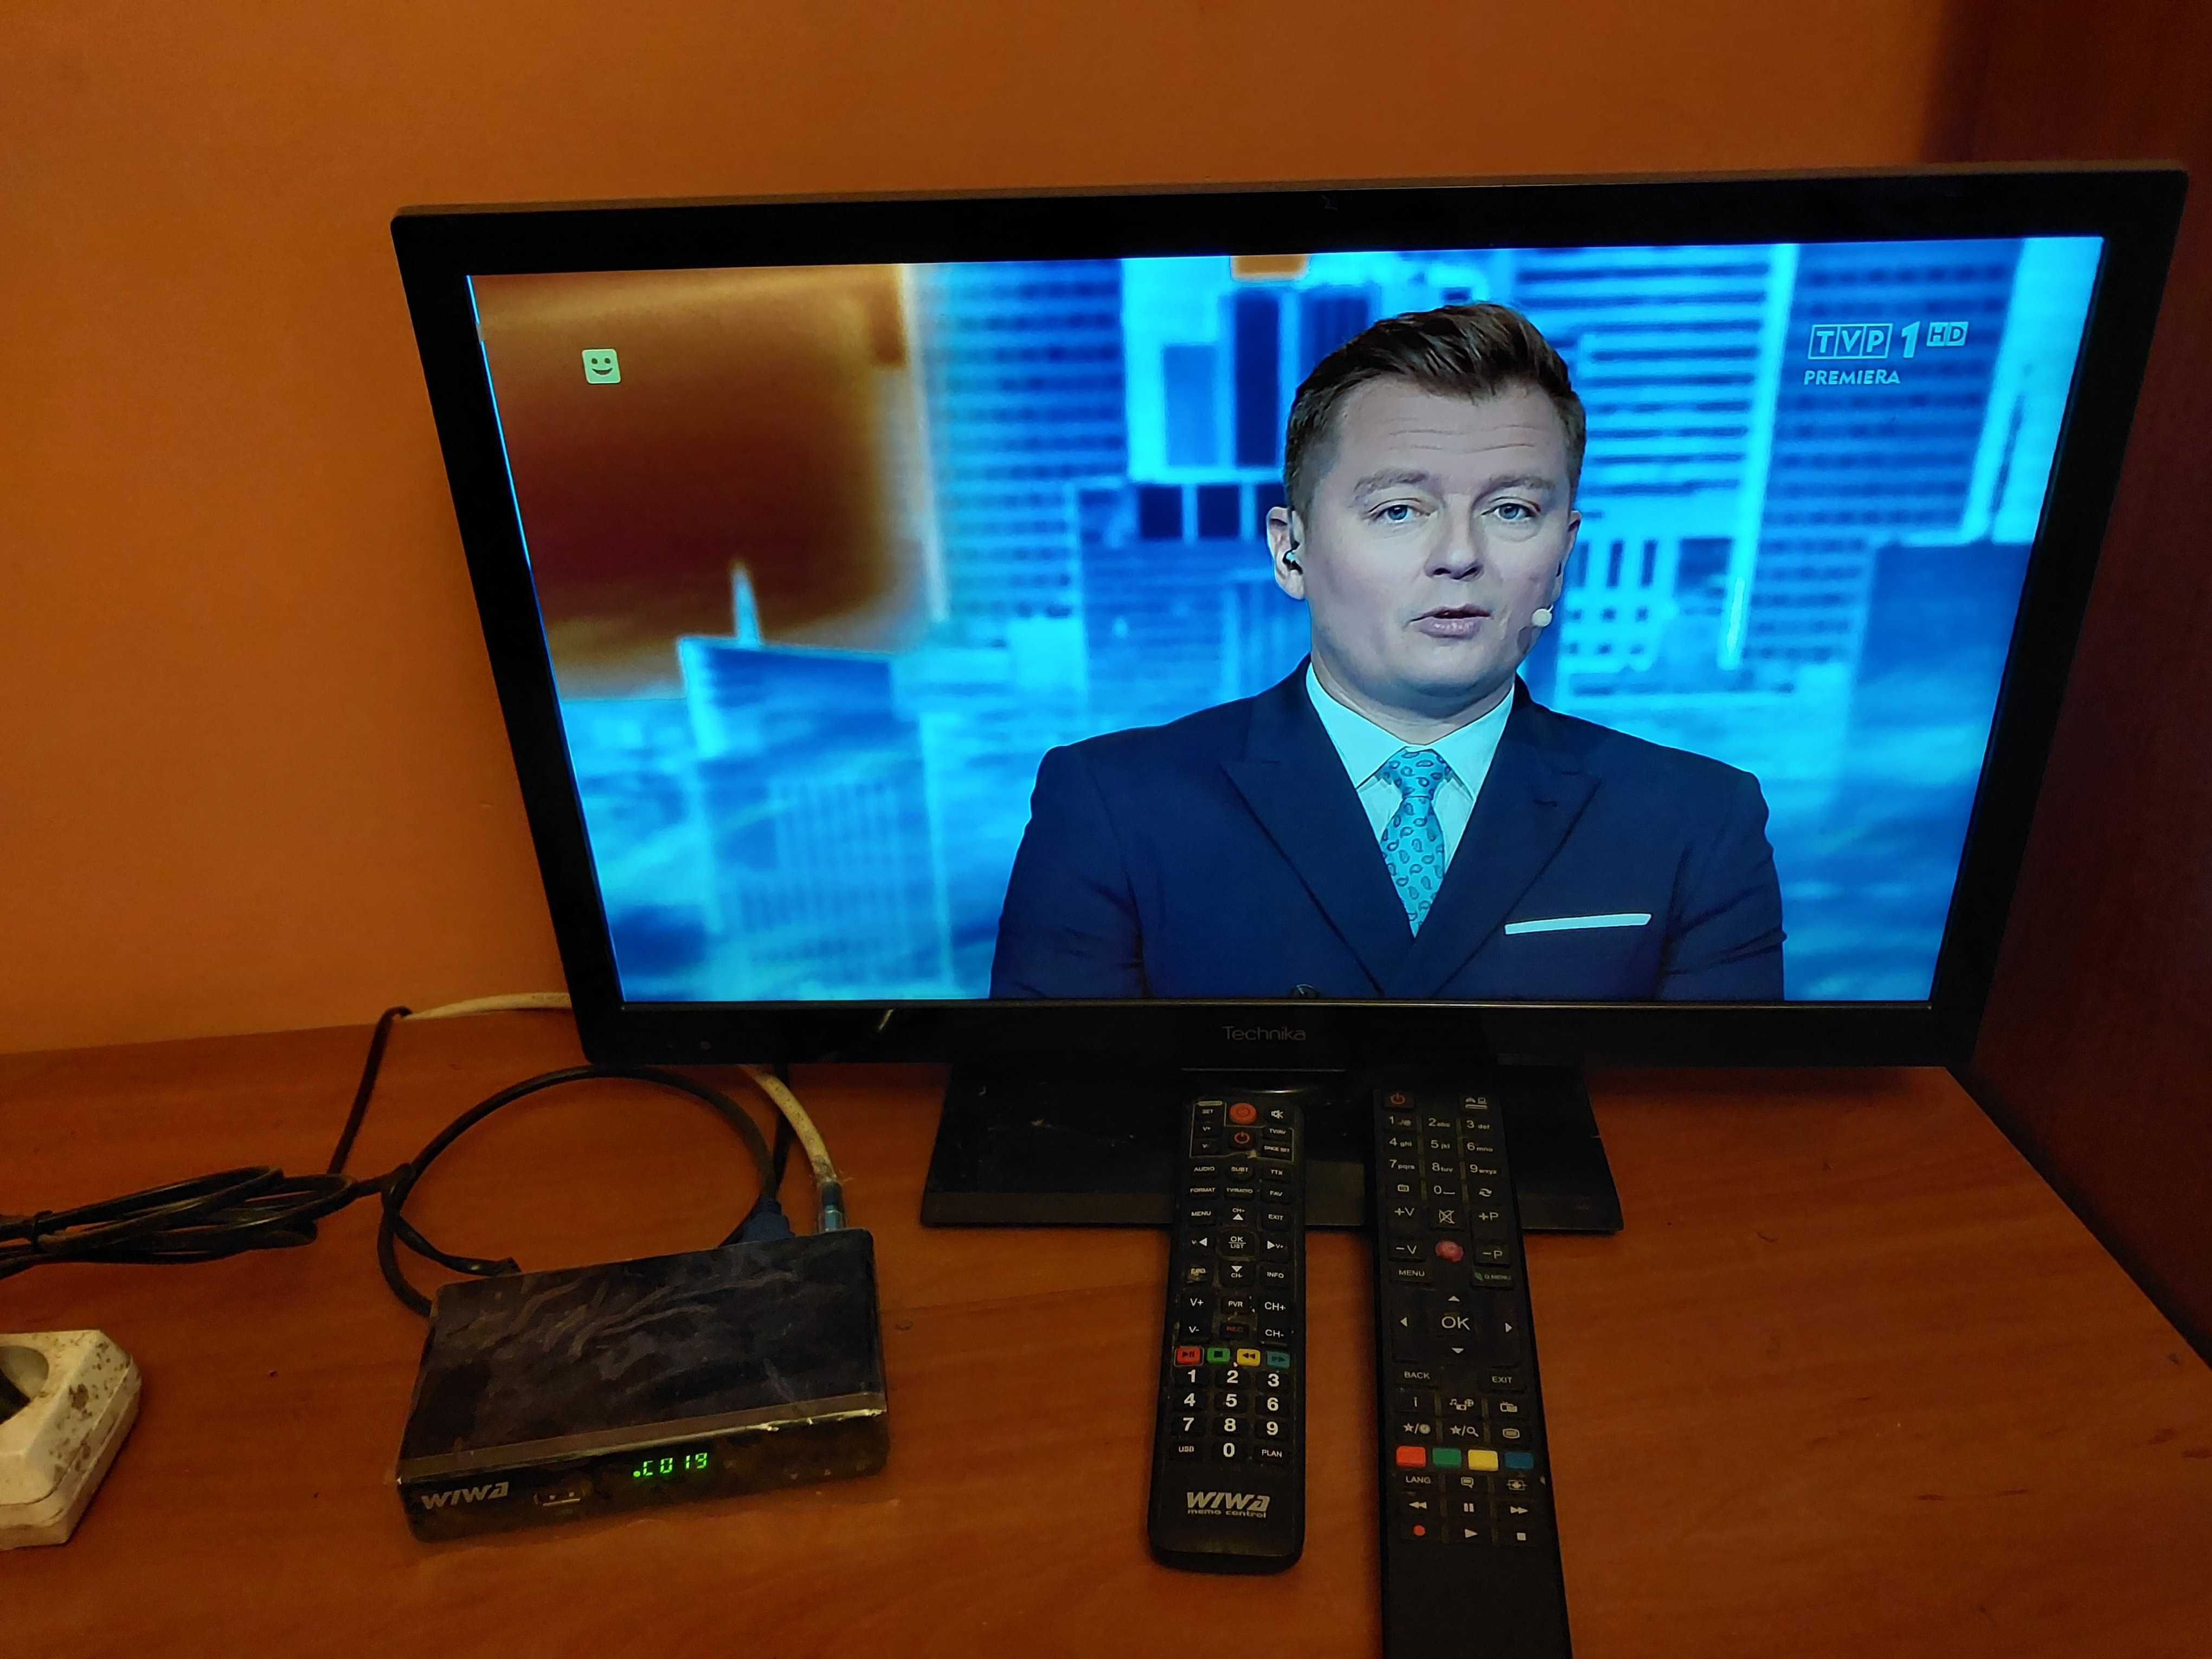 Telewizor 22 cale do odbioru cyfrowego naziemnego DVB-T2 (gwarancja).